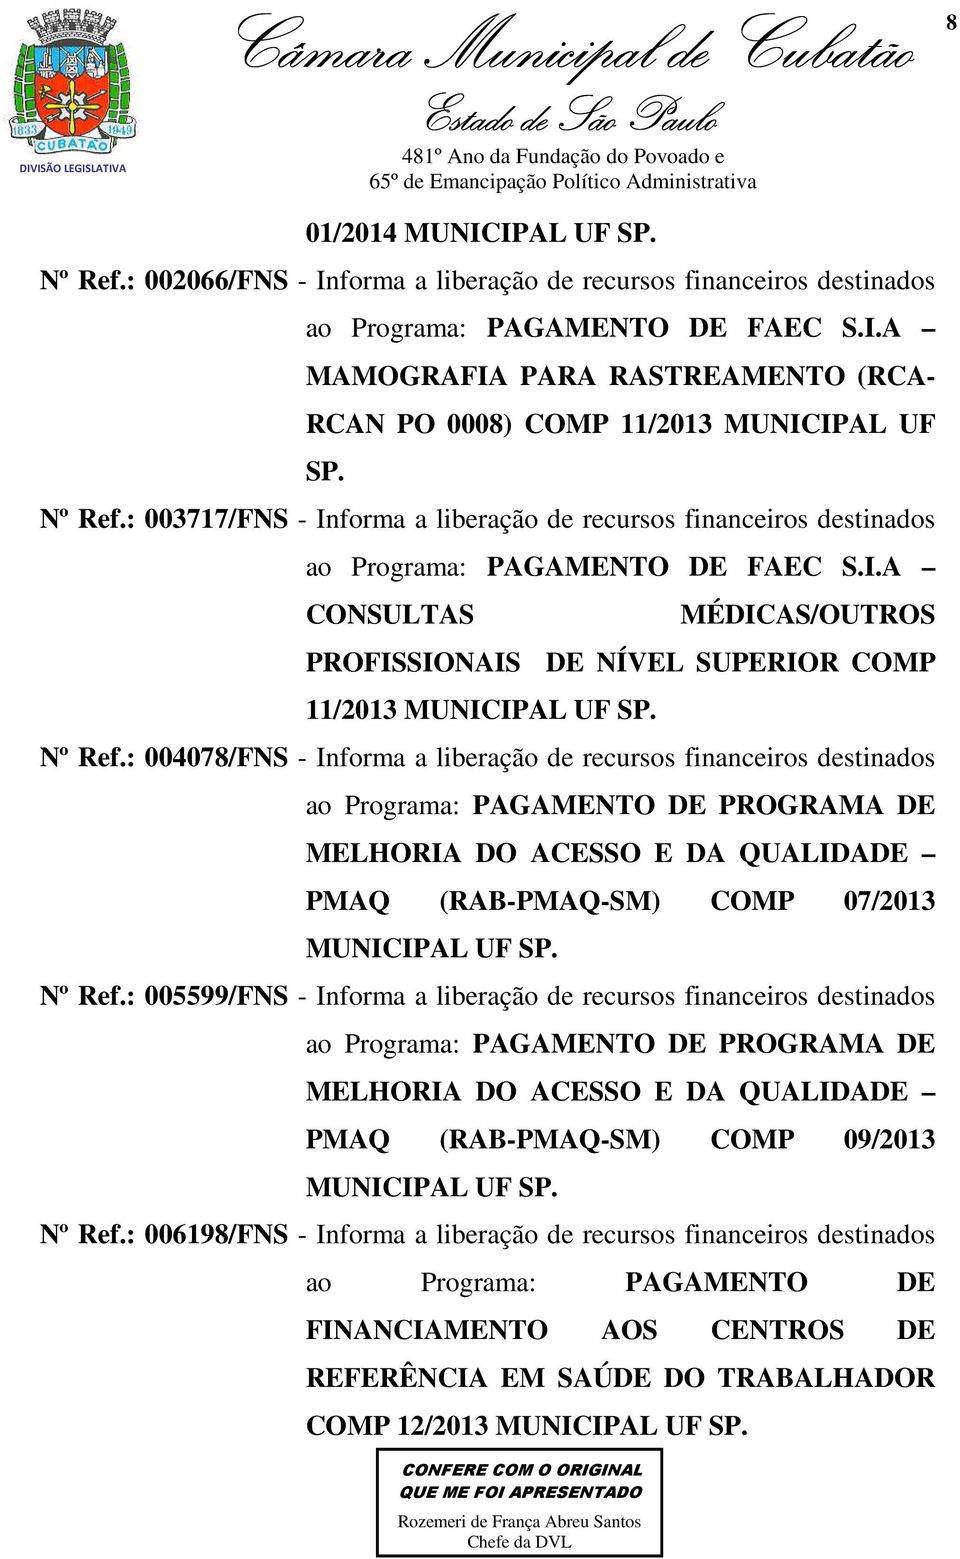 Nº Ref.: 004078/FNS - Informa a liberação de recursos financeiros destinados ao Programa: PAGAMENTO DE PROGRAMA DE MELHORIA DO ACESSO E DA QUALIDADE PMAQ (RAB-PMAQ-SM) COMP 07/2013 MUNICIPAL UF SP.